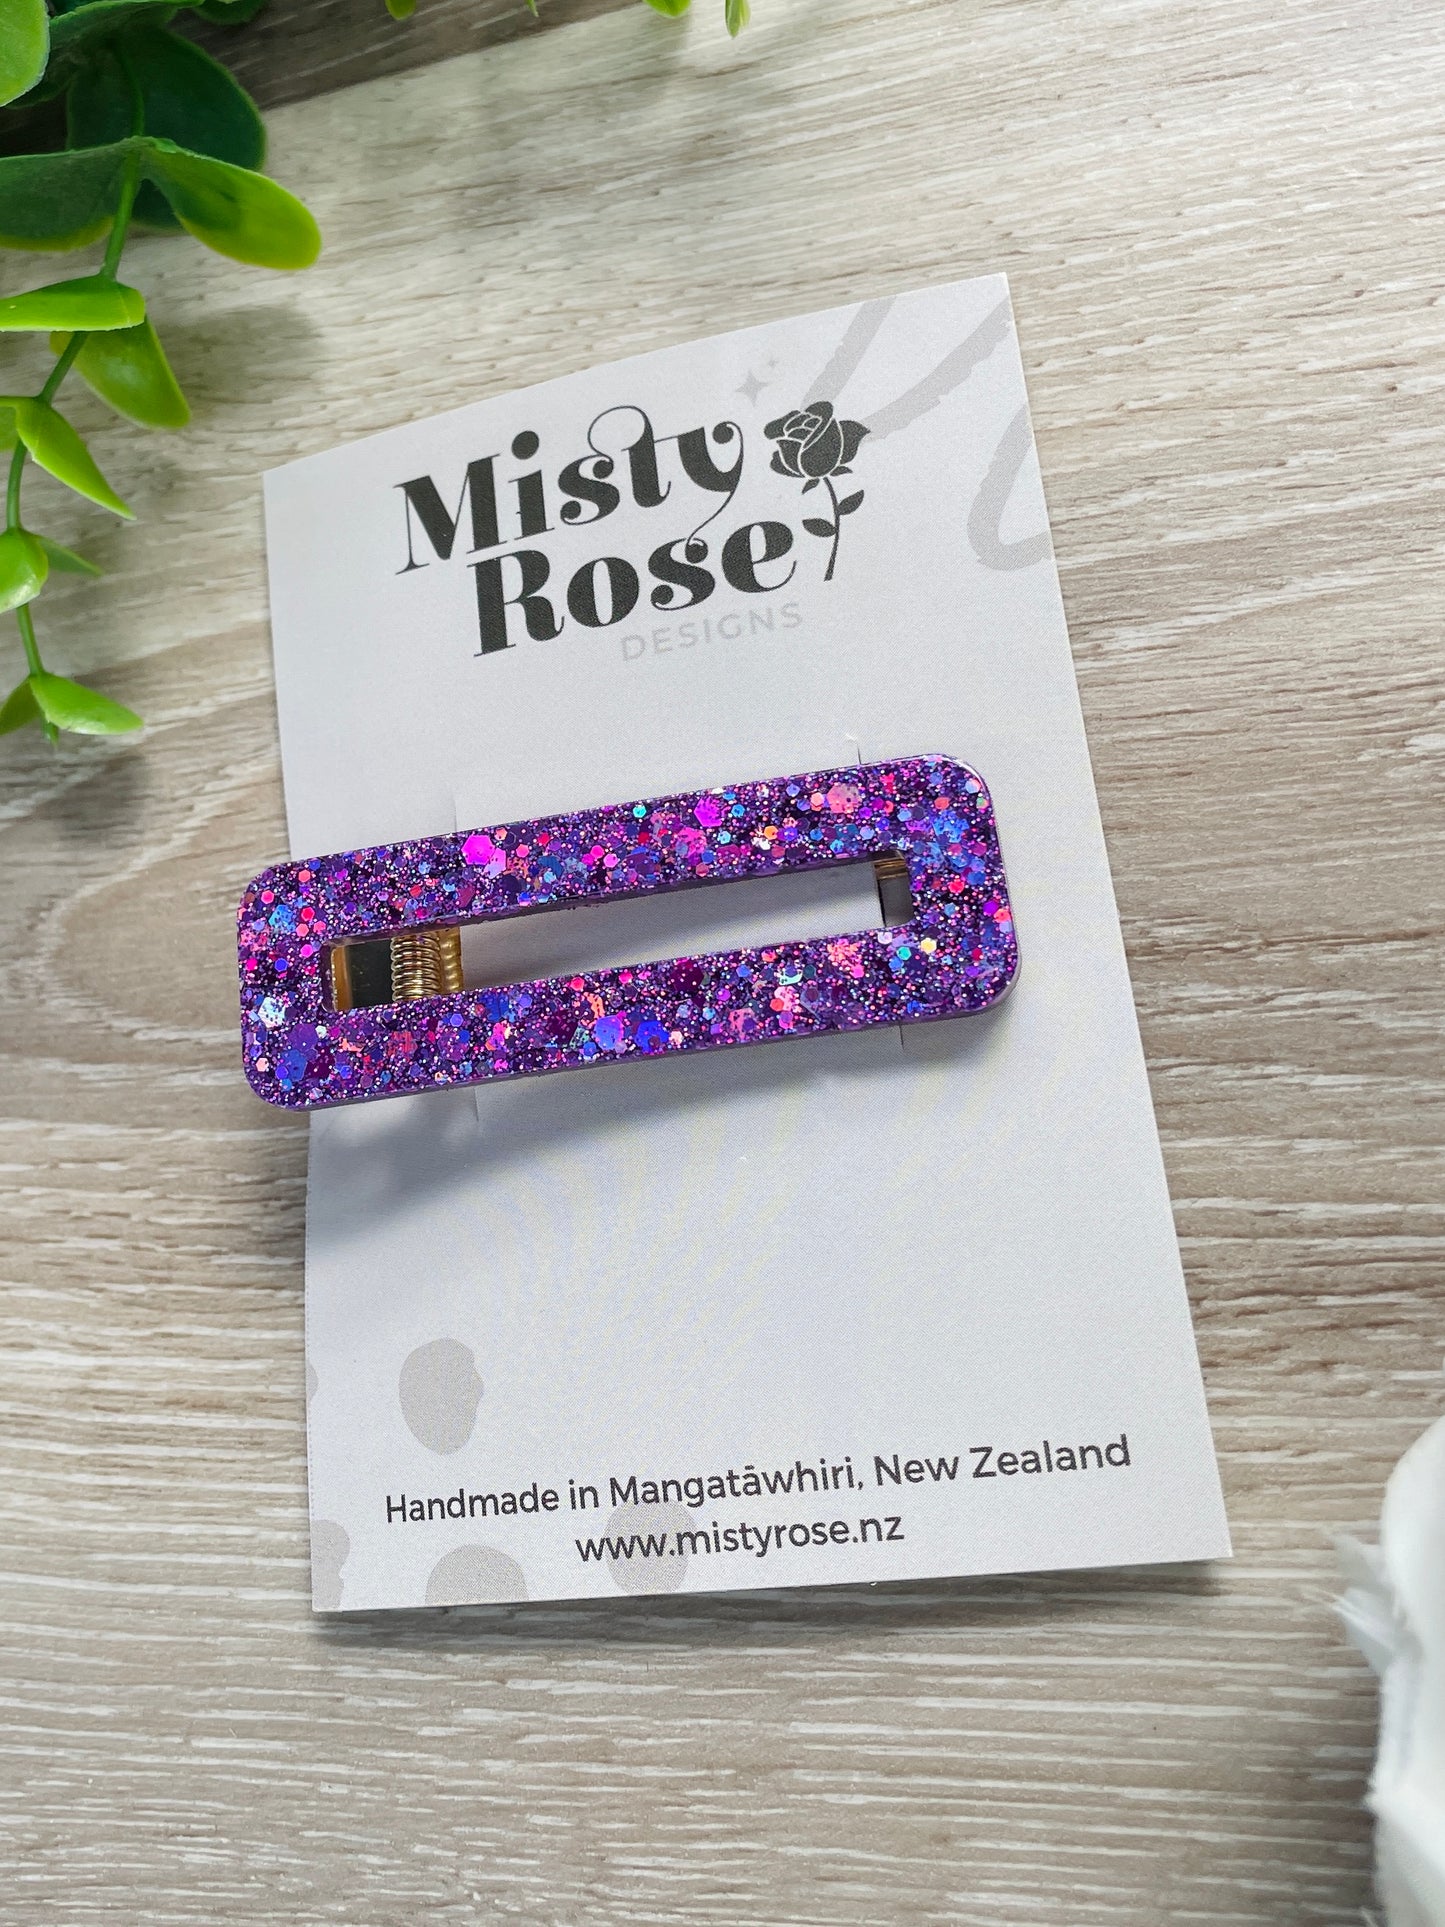 Purple Hair Clip